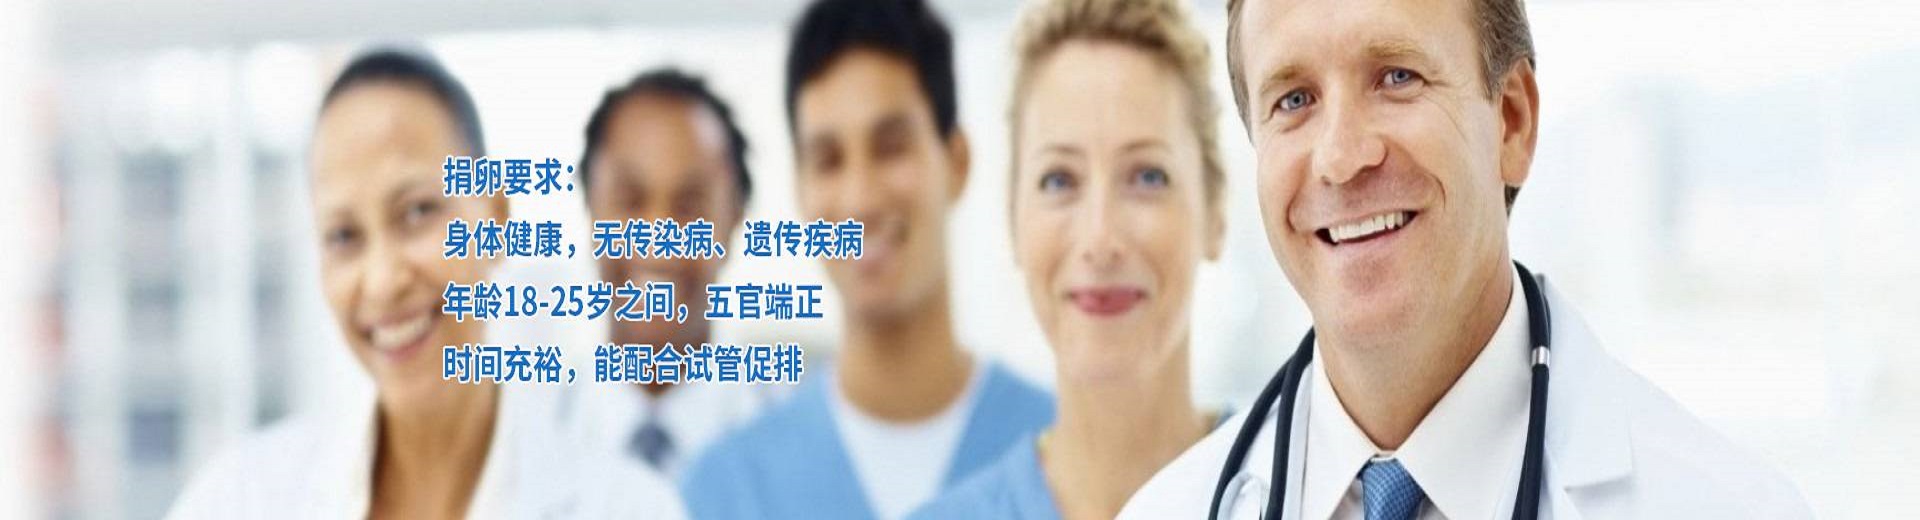 杭州助孕公司机构,杭州第三方辅助生殖